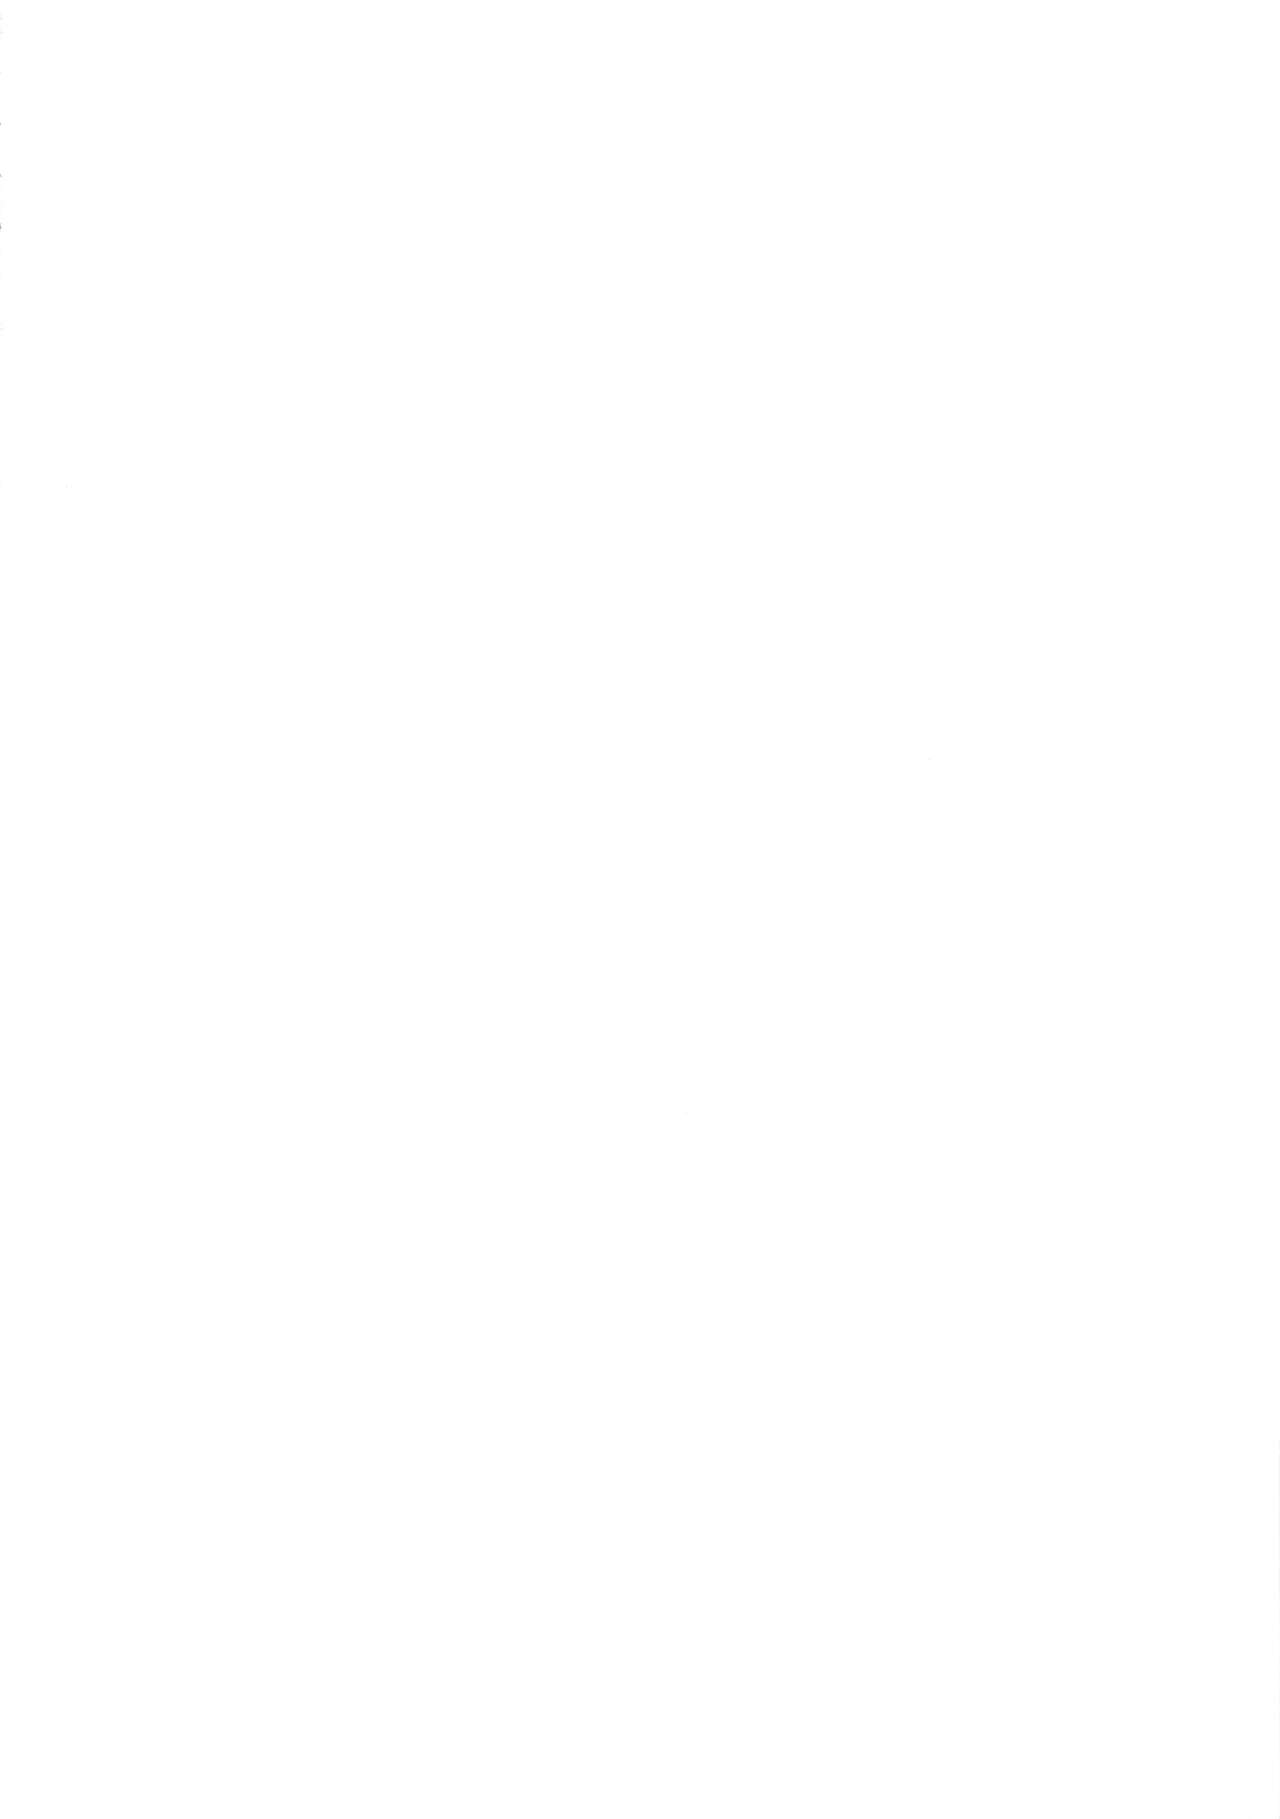 (僕らのラブライブ! 32) [えのころくらげ (NOSA)] TOY DOLL (ラブライブ! 虹ヶ咲学園スクールアイドル同好会) [英訳]